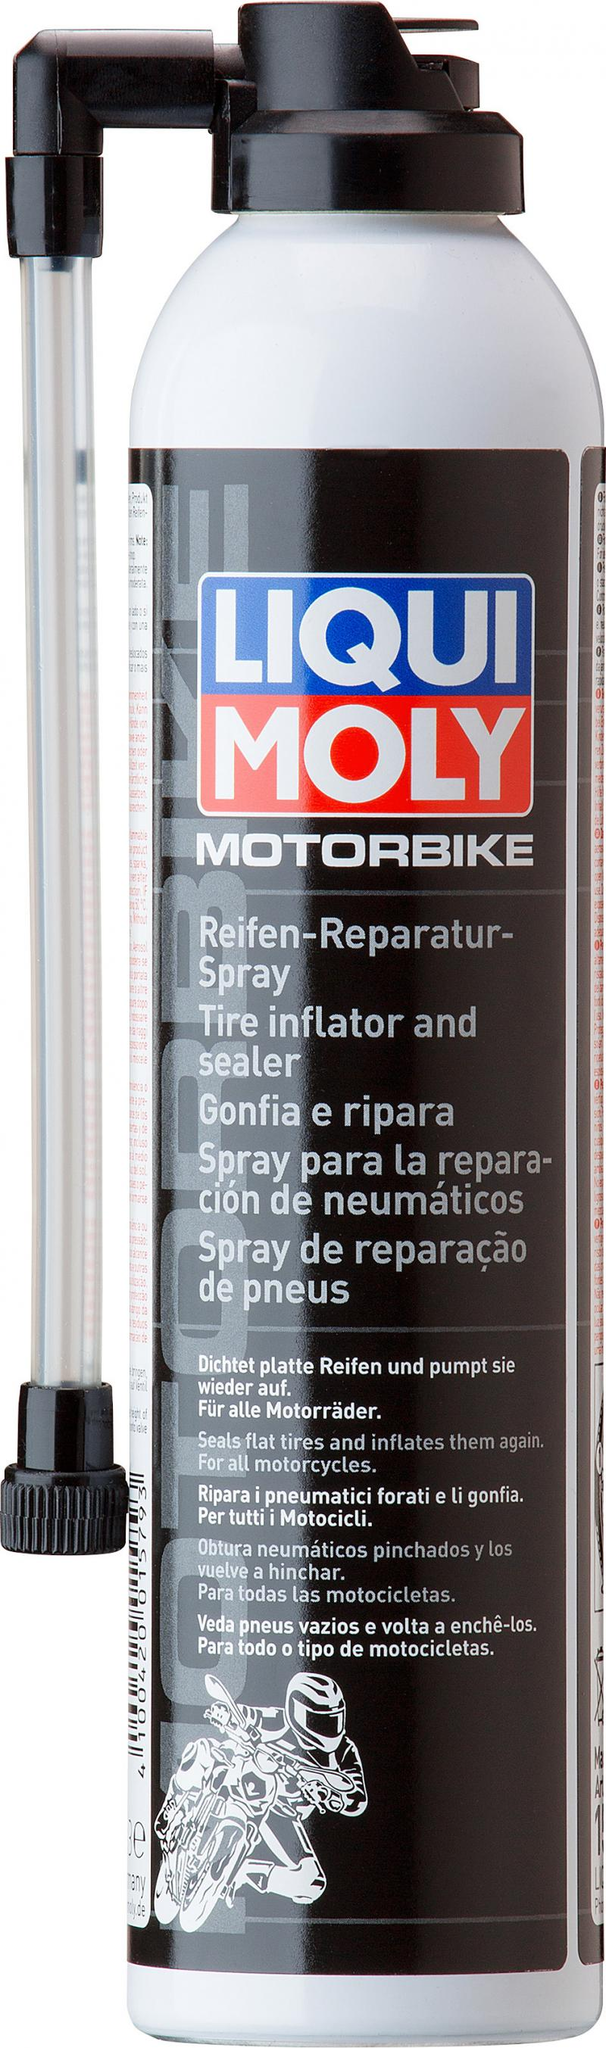 Liqui Moly gonfleur et scelleur de pneus moto - 300ML